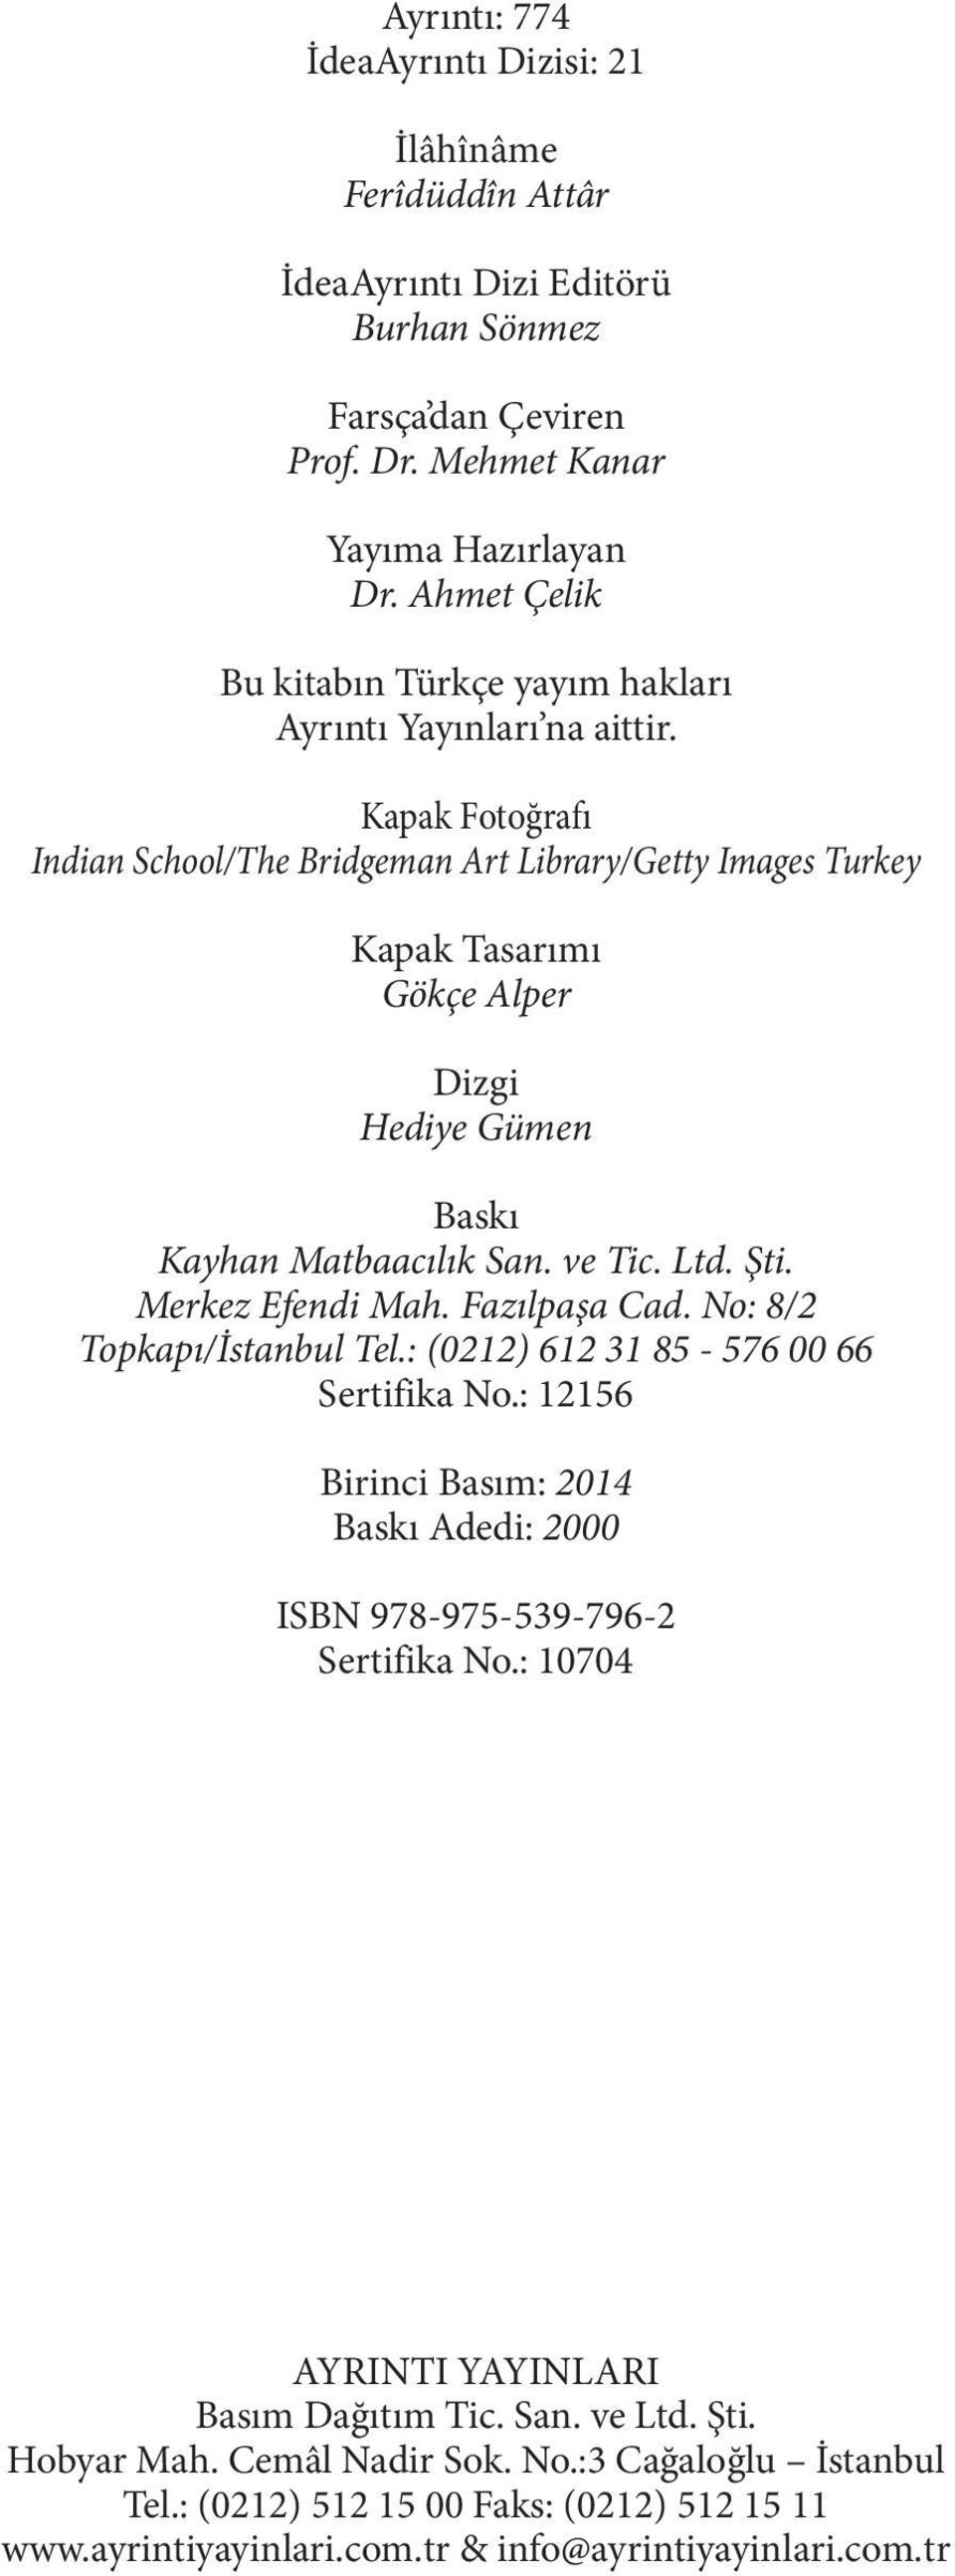 Kapak Fotoğrafı Indian School/The Bridgeman Art Library/Getty Images Turkey Kapak Tasarımı Gökçe Alper Dizgi Hediye Gümen Baskı Kayhan Matbaacılık San. ve Tic. Ltd. Şti. Merkez Efendi Mah.